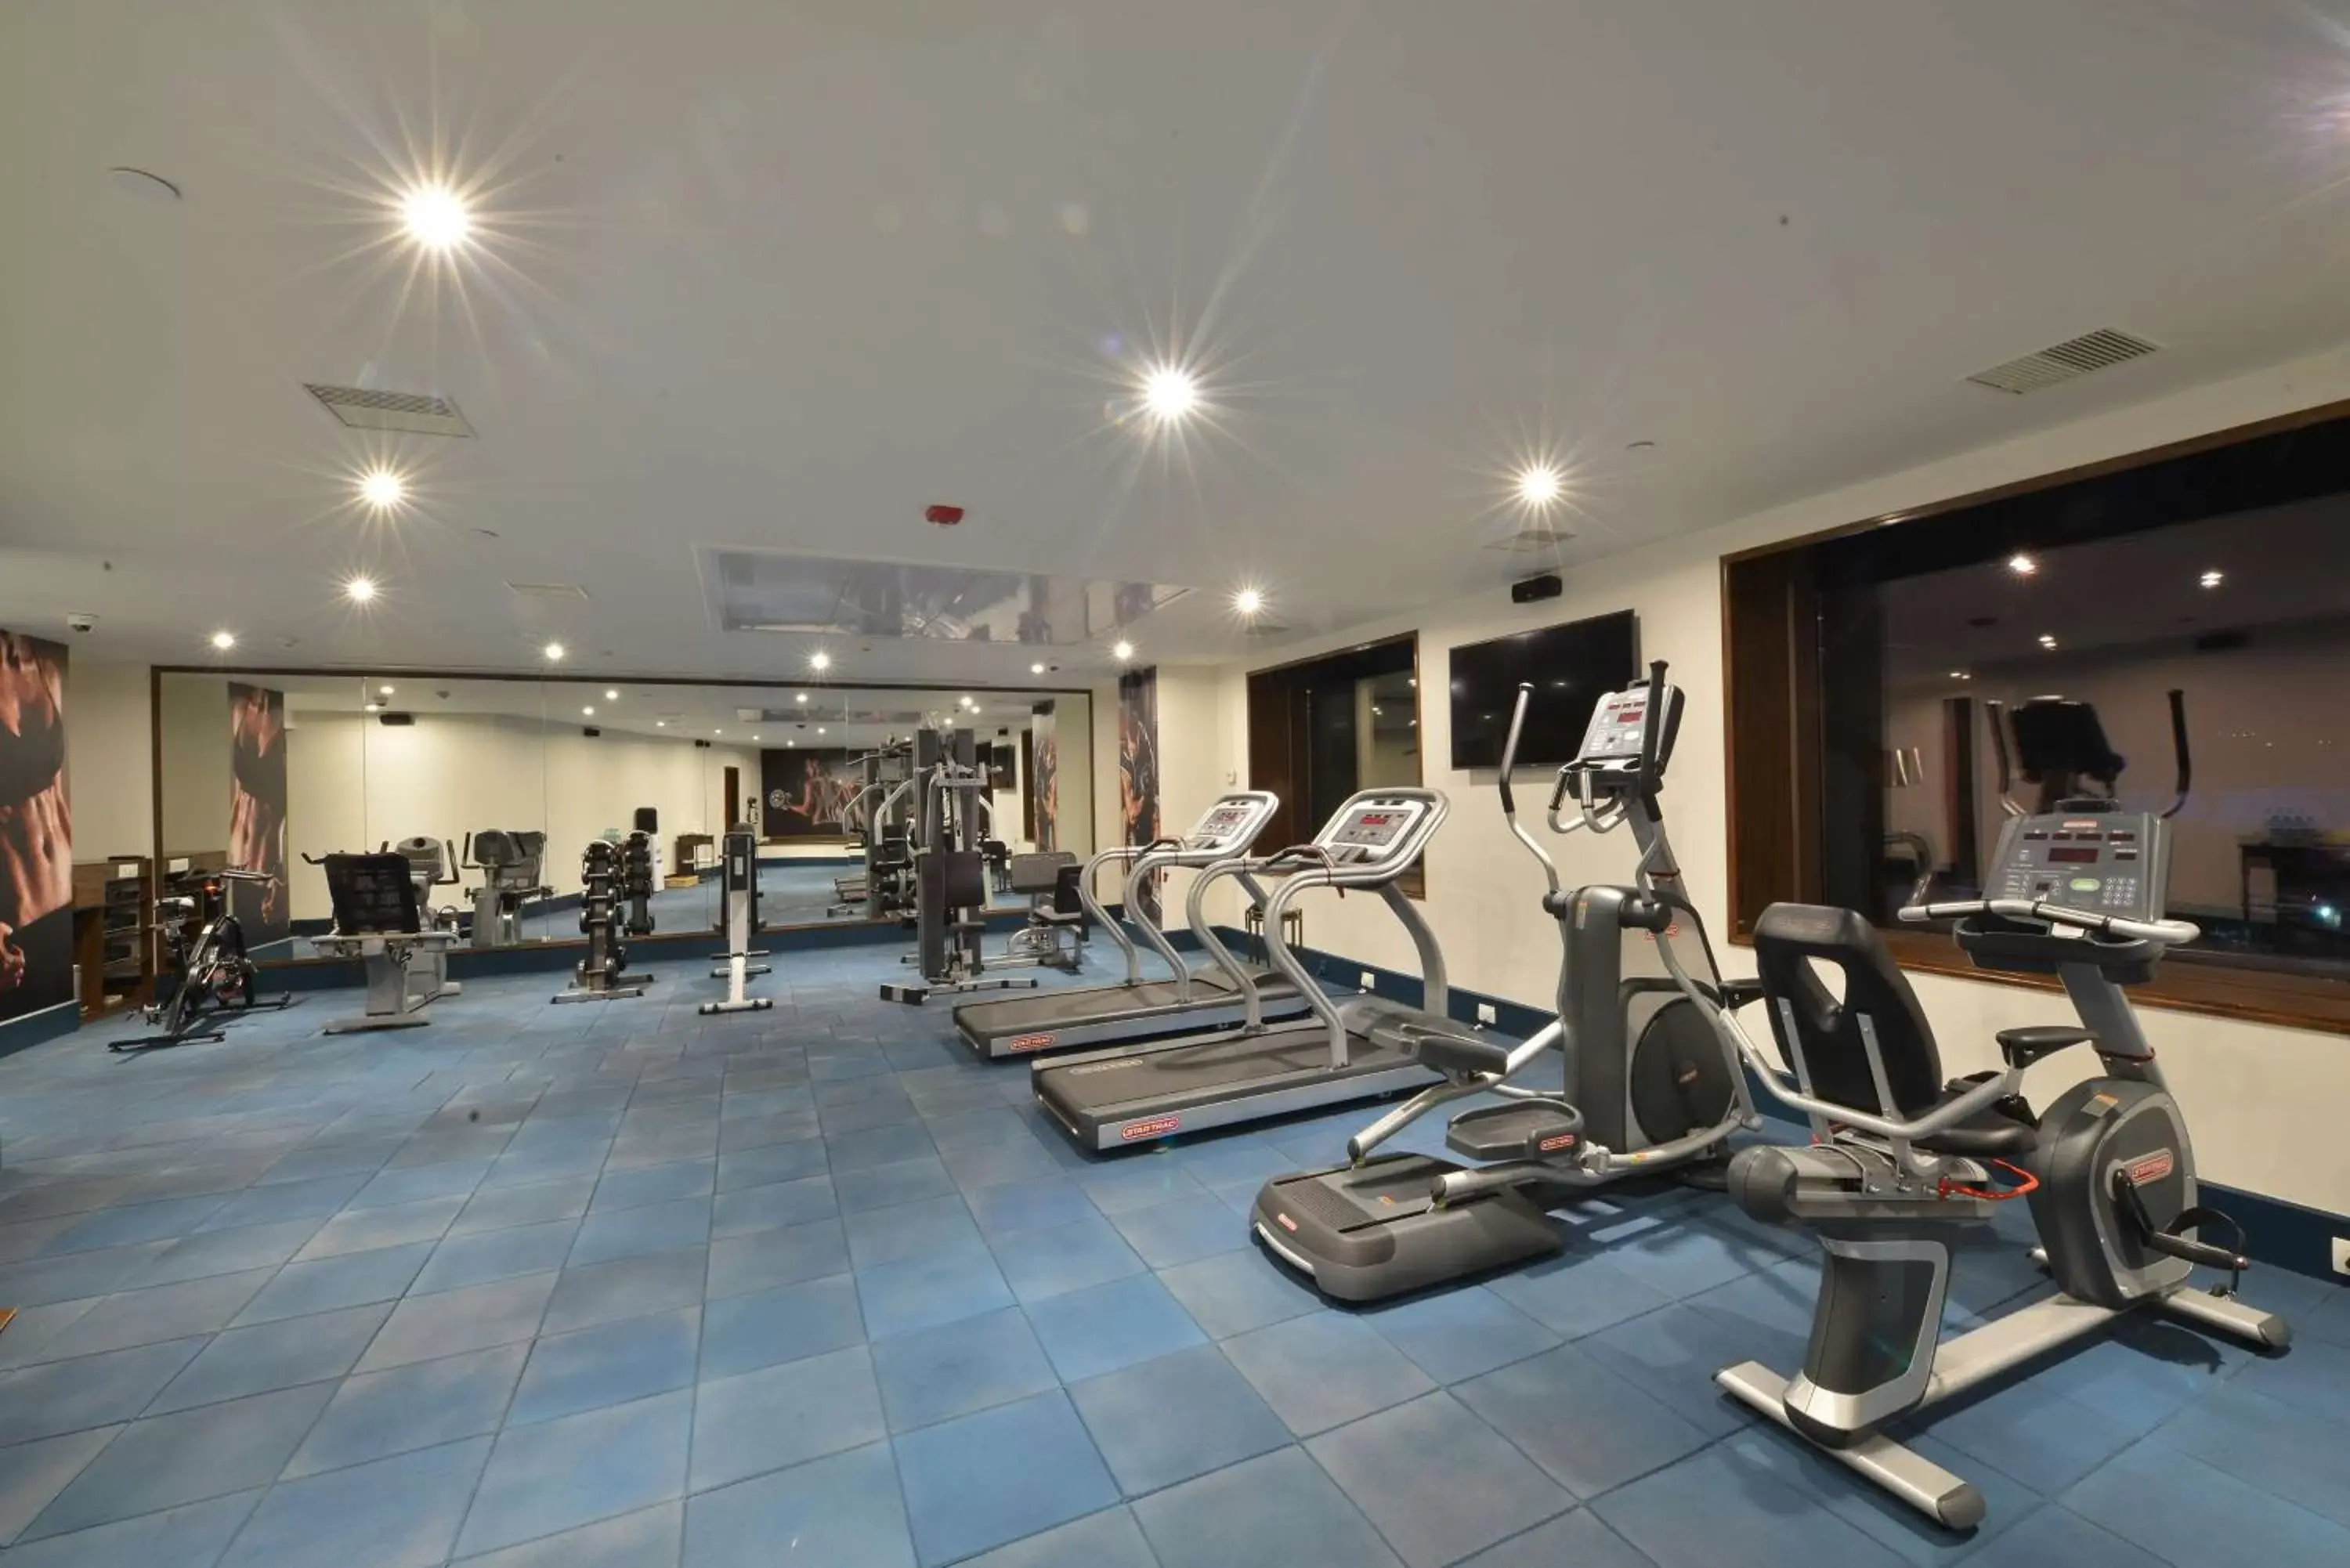 Fitness centre/facilities, Fitness Center/Facilities in Ramada Plaza Chennai